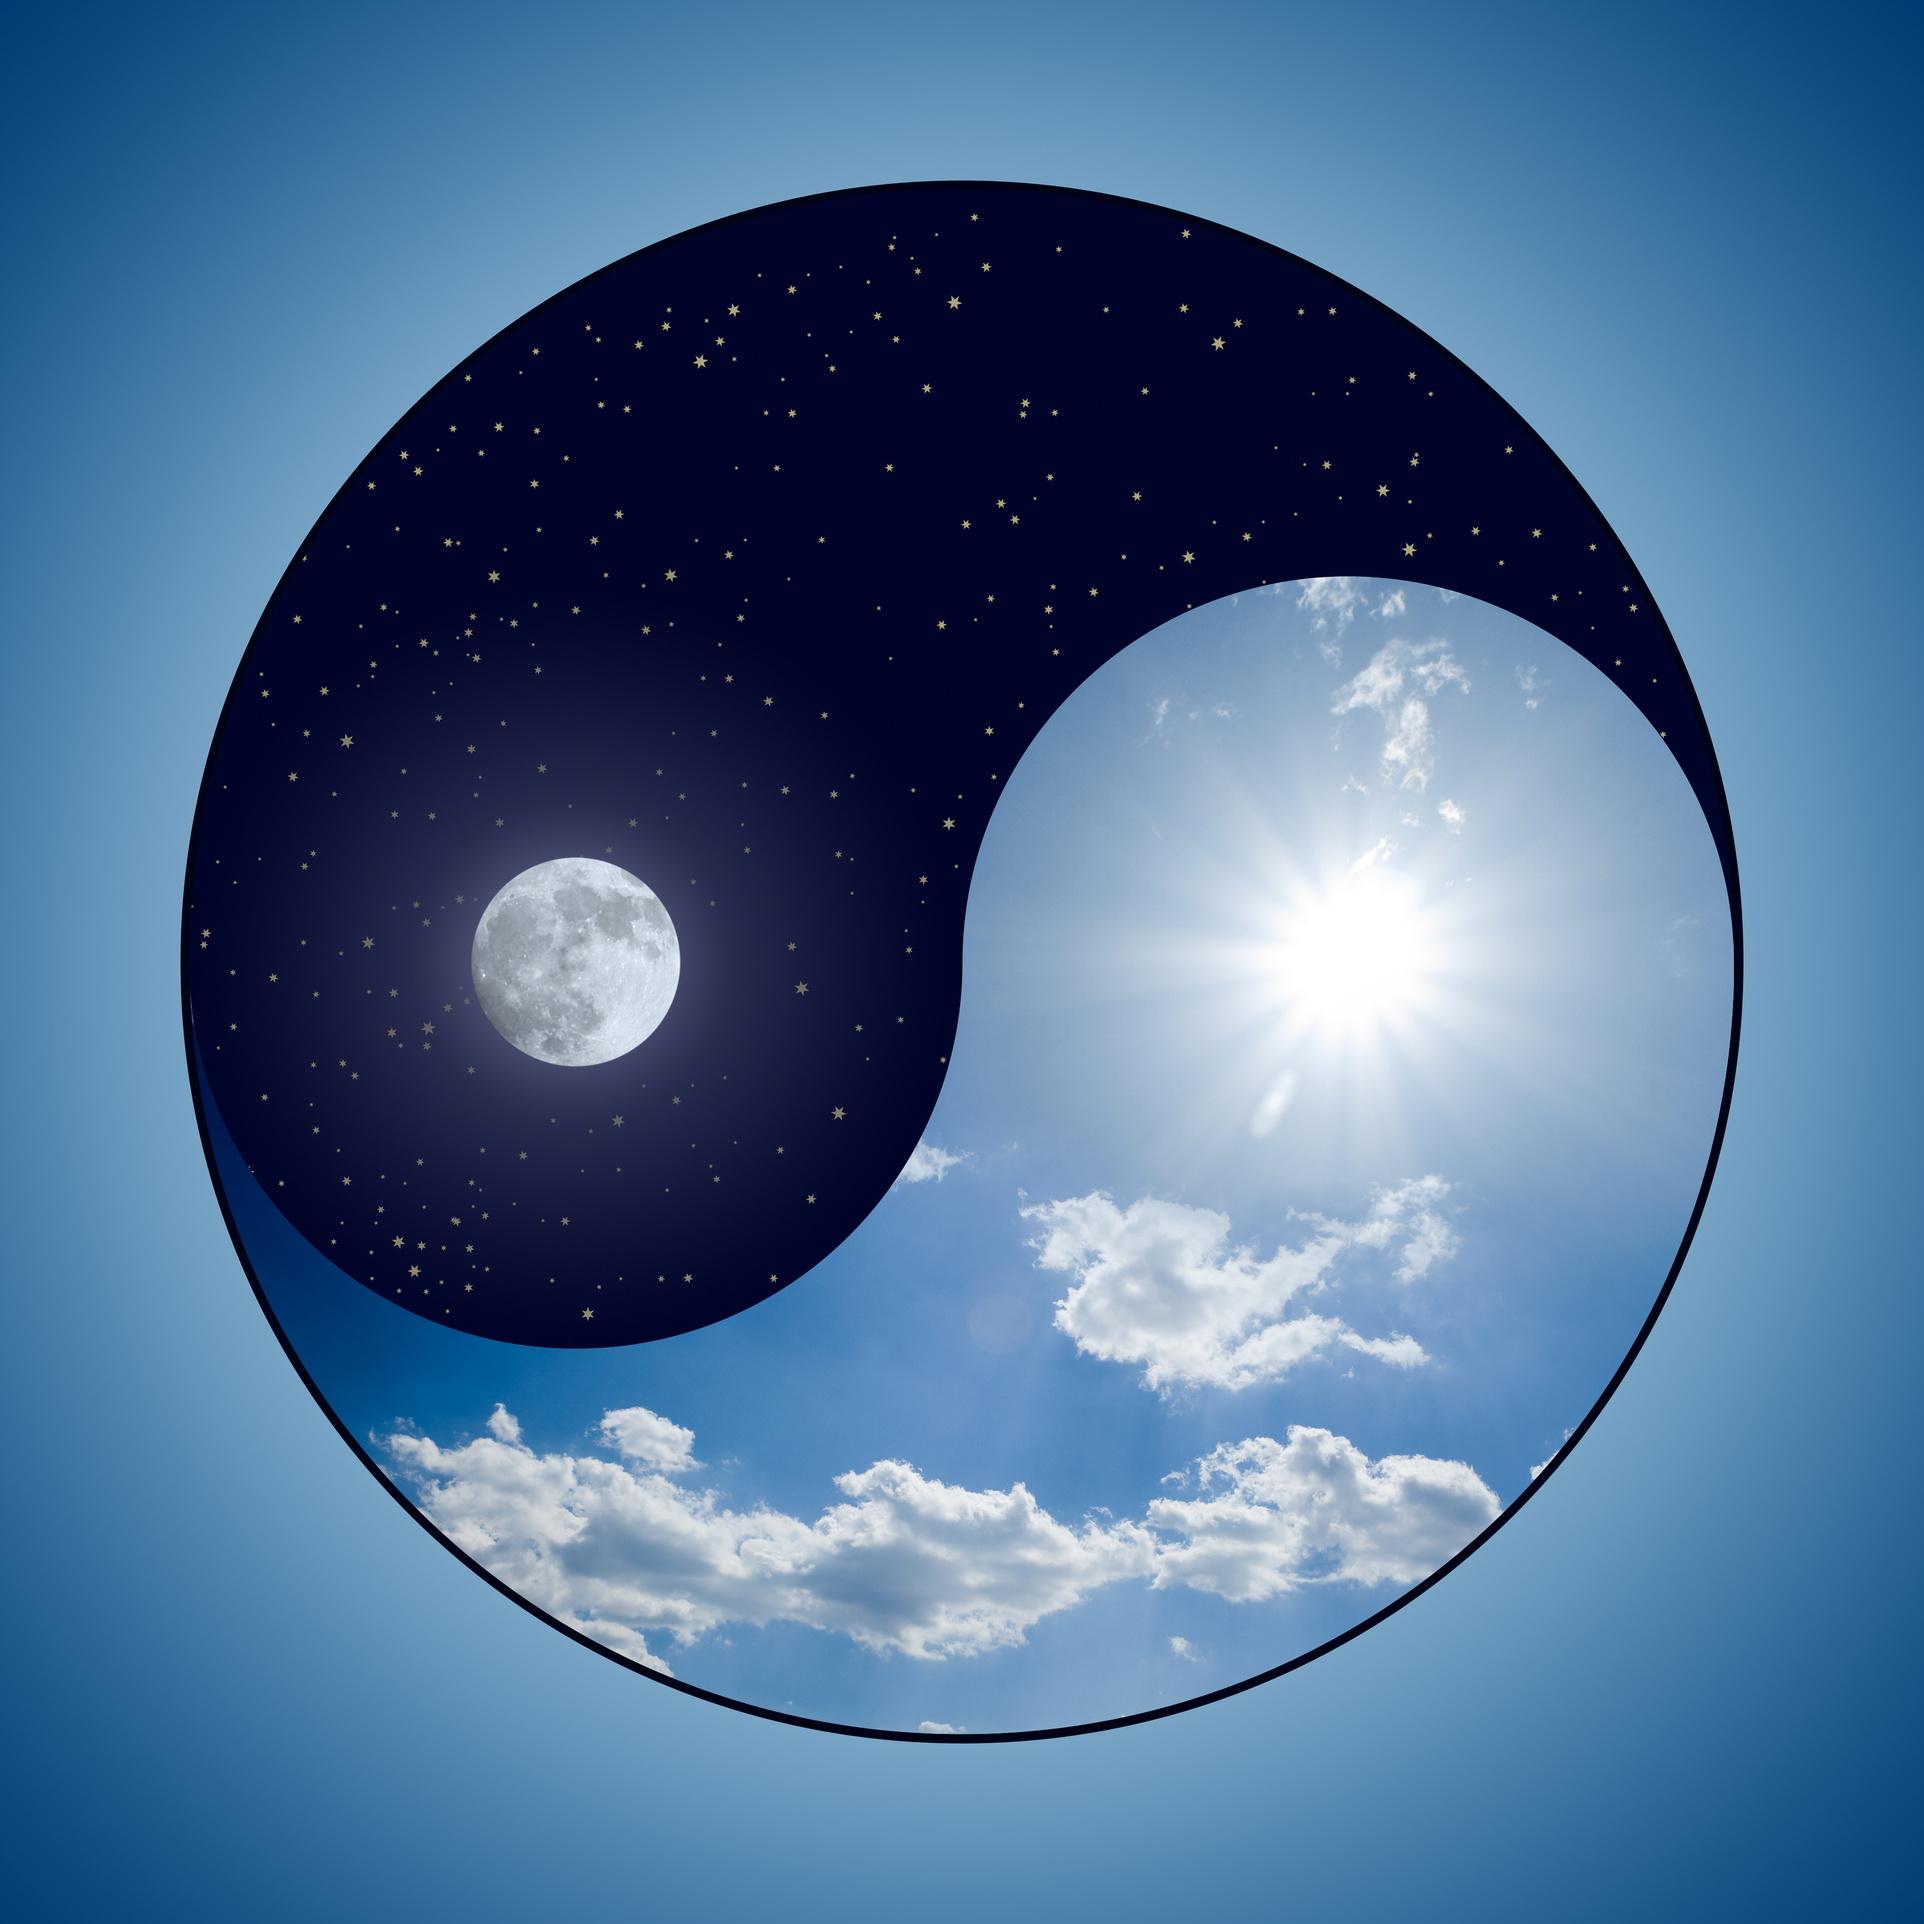 Modified Yin & Yang symbol - sunny day versus moon at night